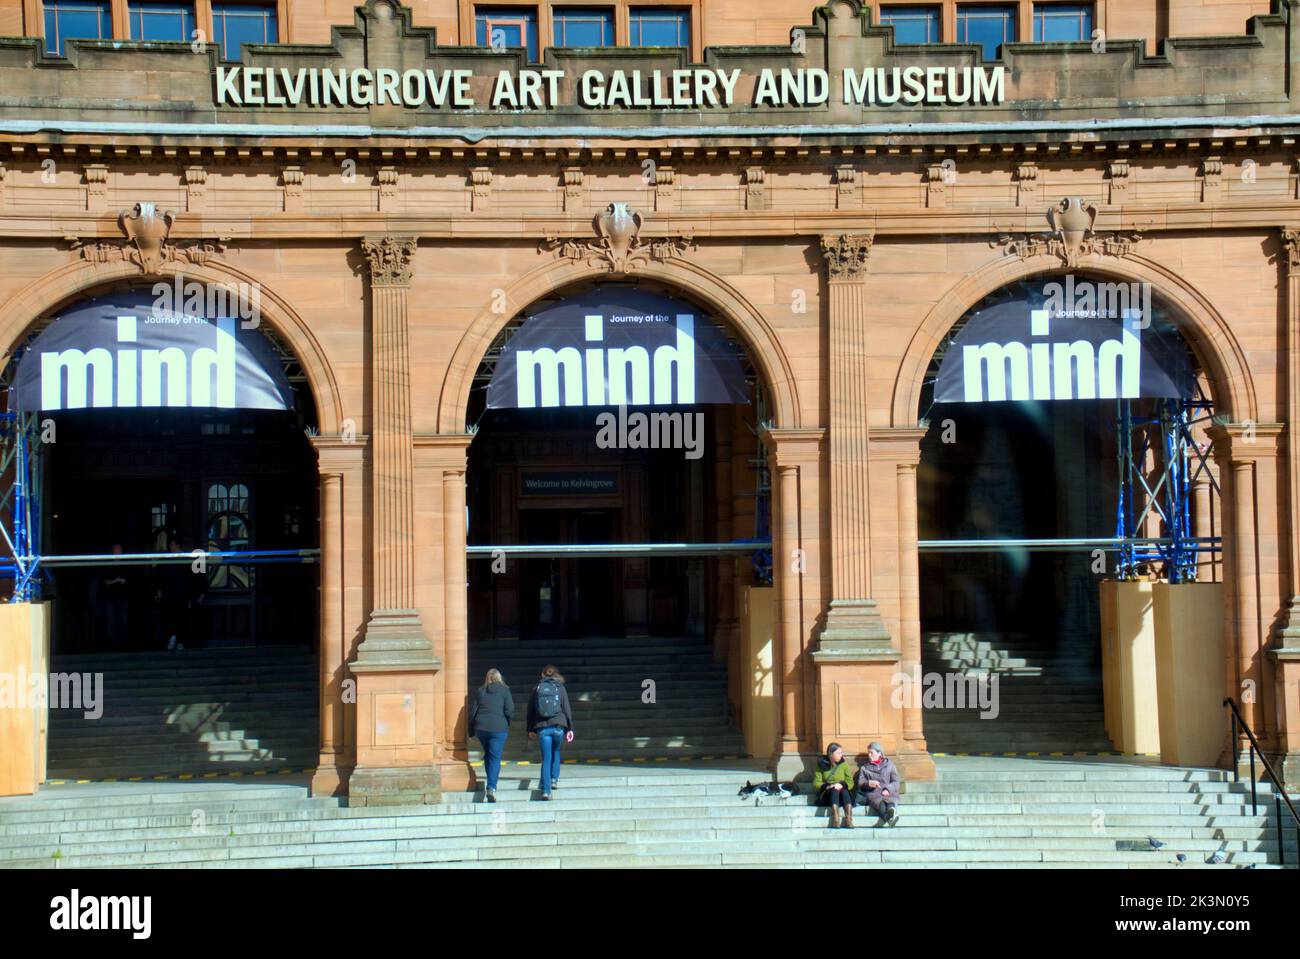 Musée et galerie d'art Kelvingrove lors de l'exposition Journey of the Mind à Glasgow, en Écosse, au Royaume-Uni Banque D'Images